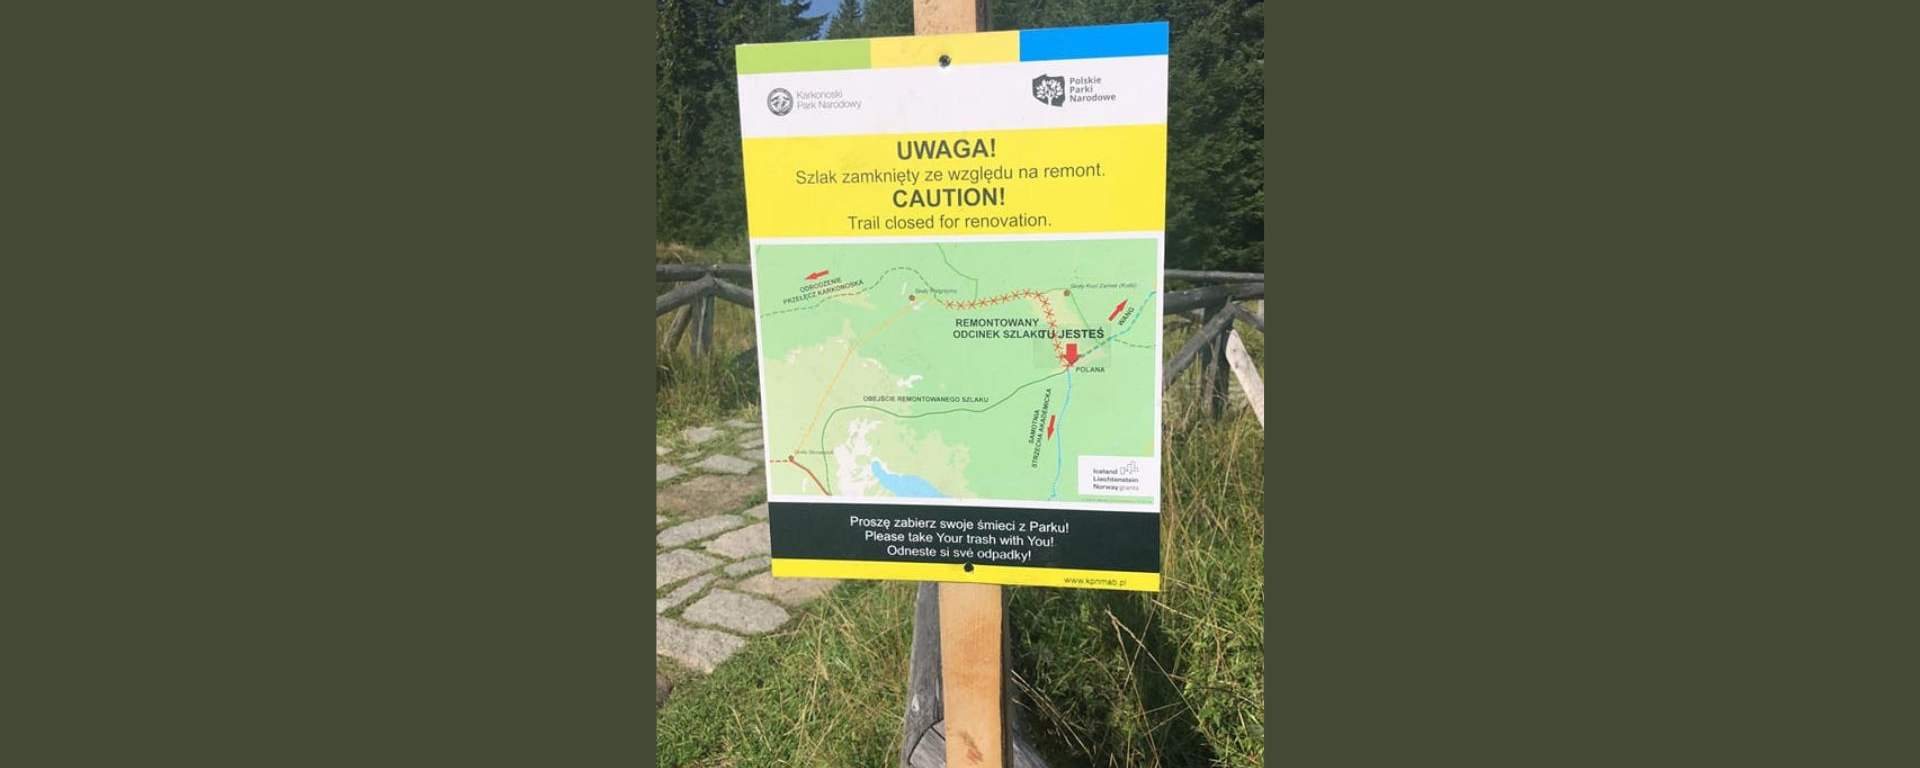 Remont żółtego szlaku od Polany do Pielgrzymów w Karkonoskim Parku Narodowym